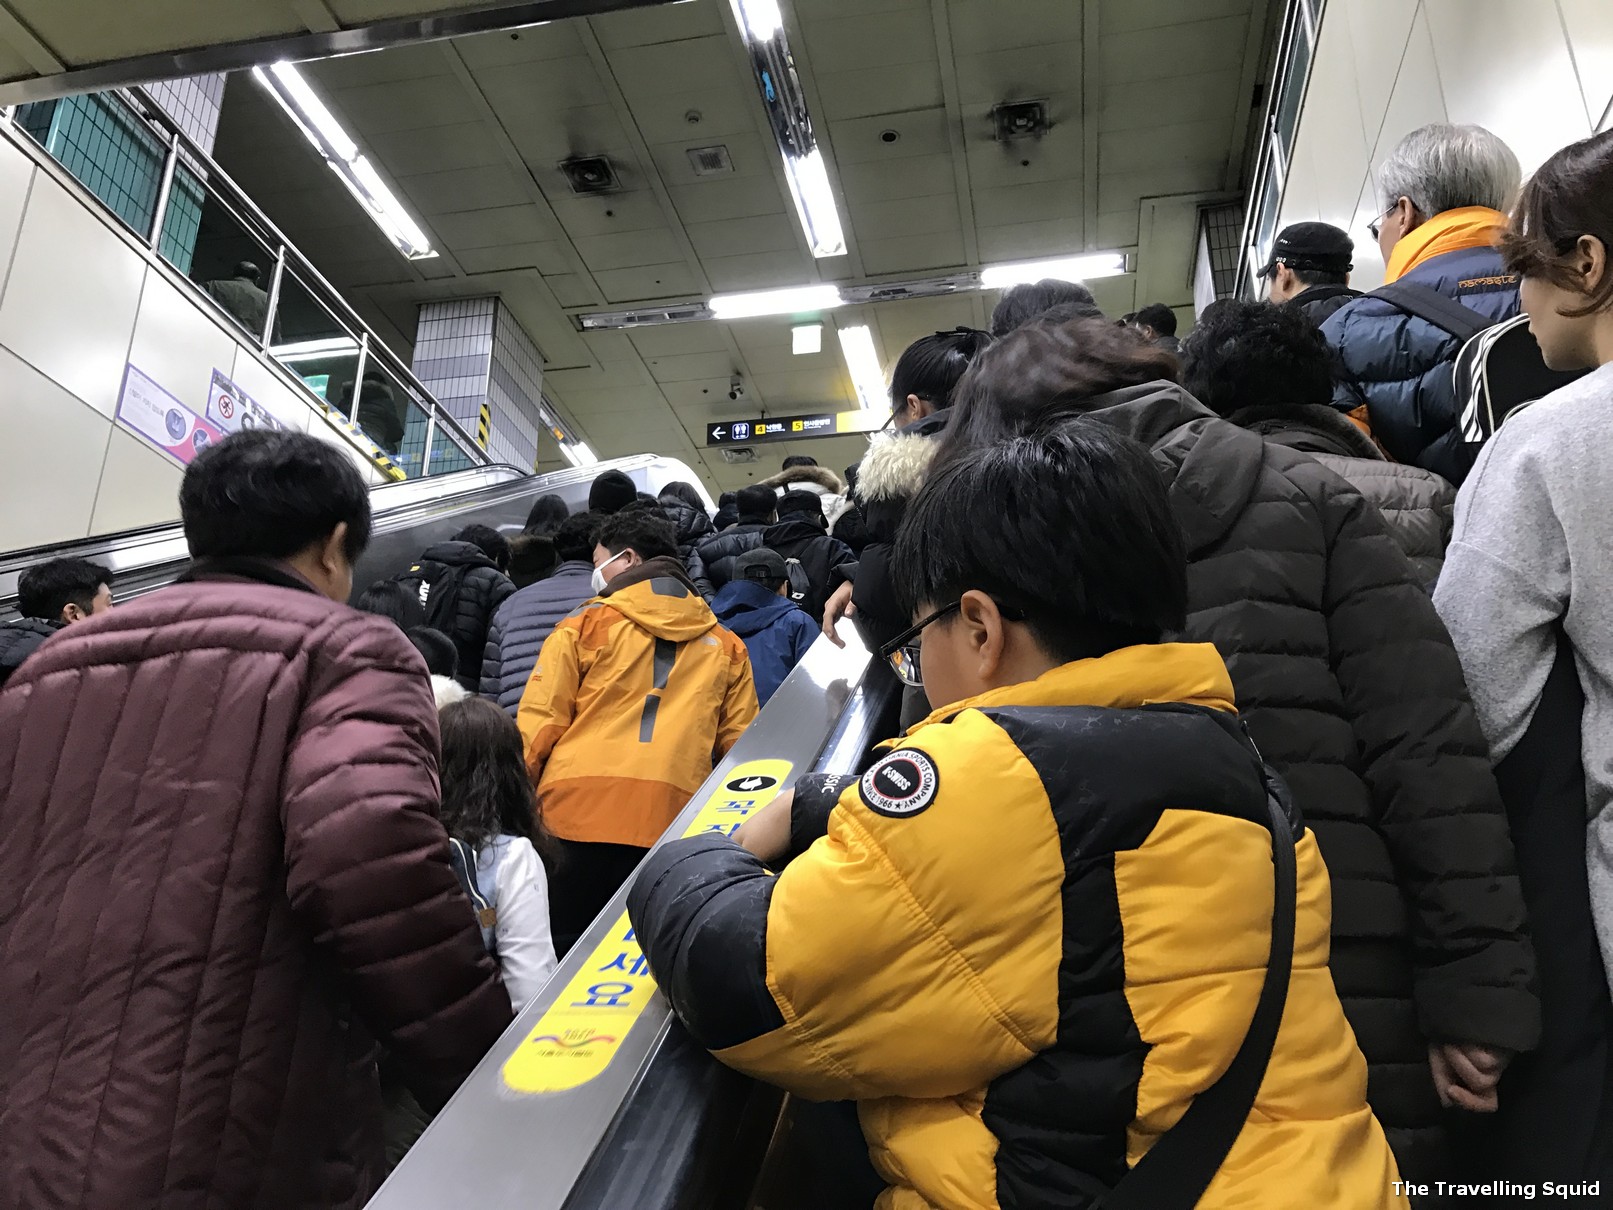 Seoul subway packed